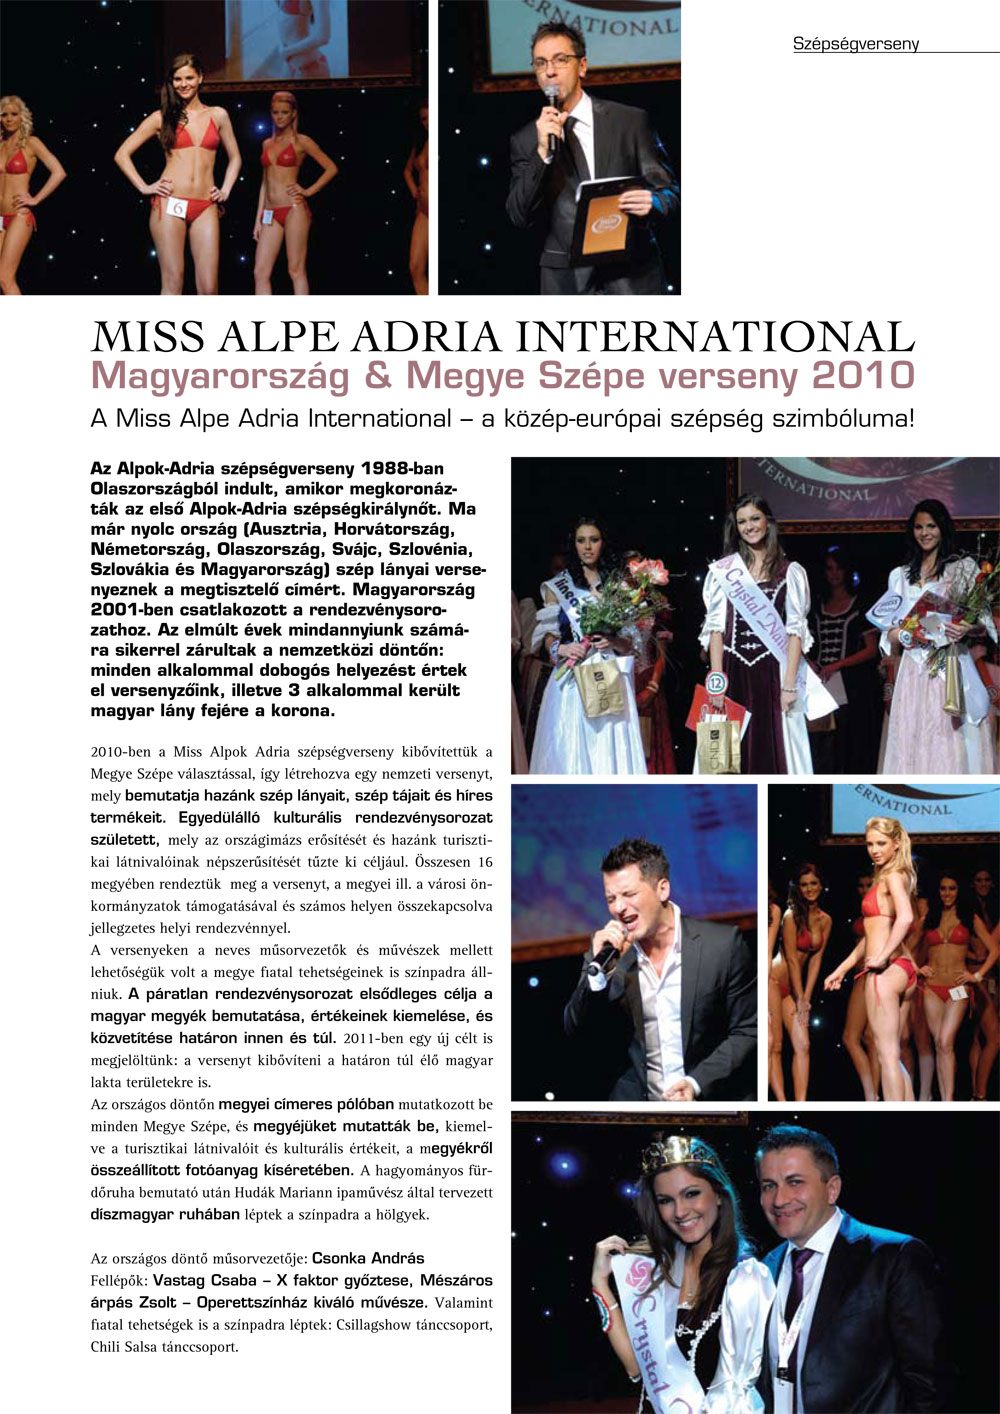 MISS ALPE ADRIA INTERNATIONAL - Magyarország & Megye Szépe verseny 2010